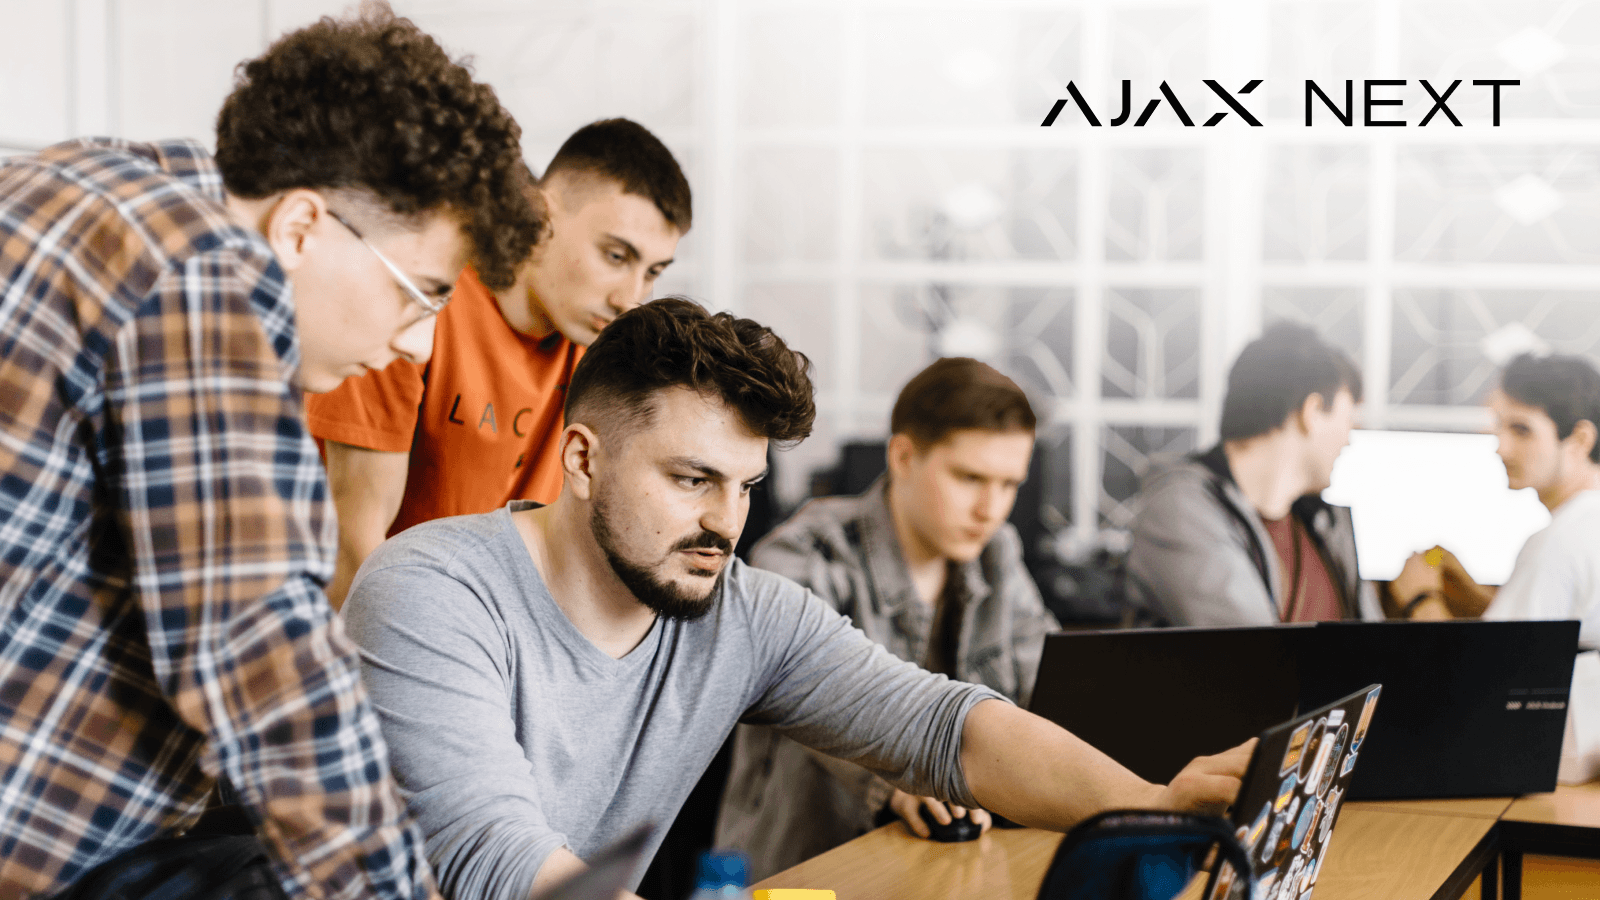 Ajax Systems rozpoczyna cenną inicjatywę edukacyjną  Ajax Next